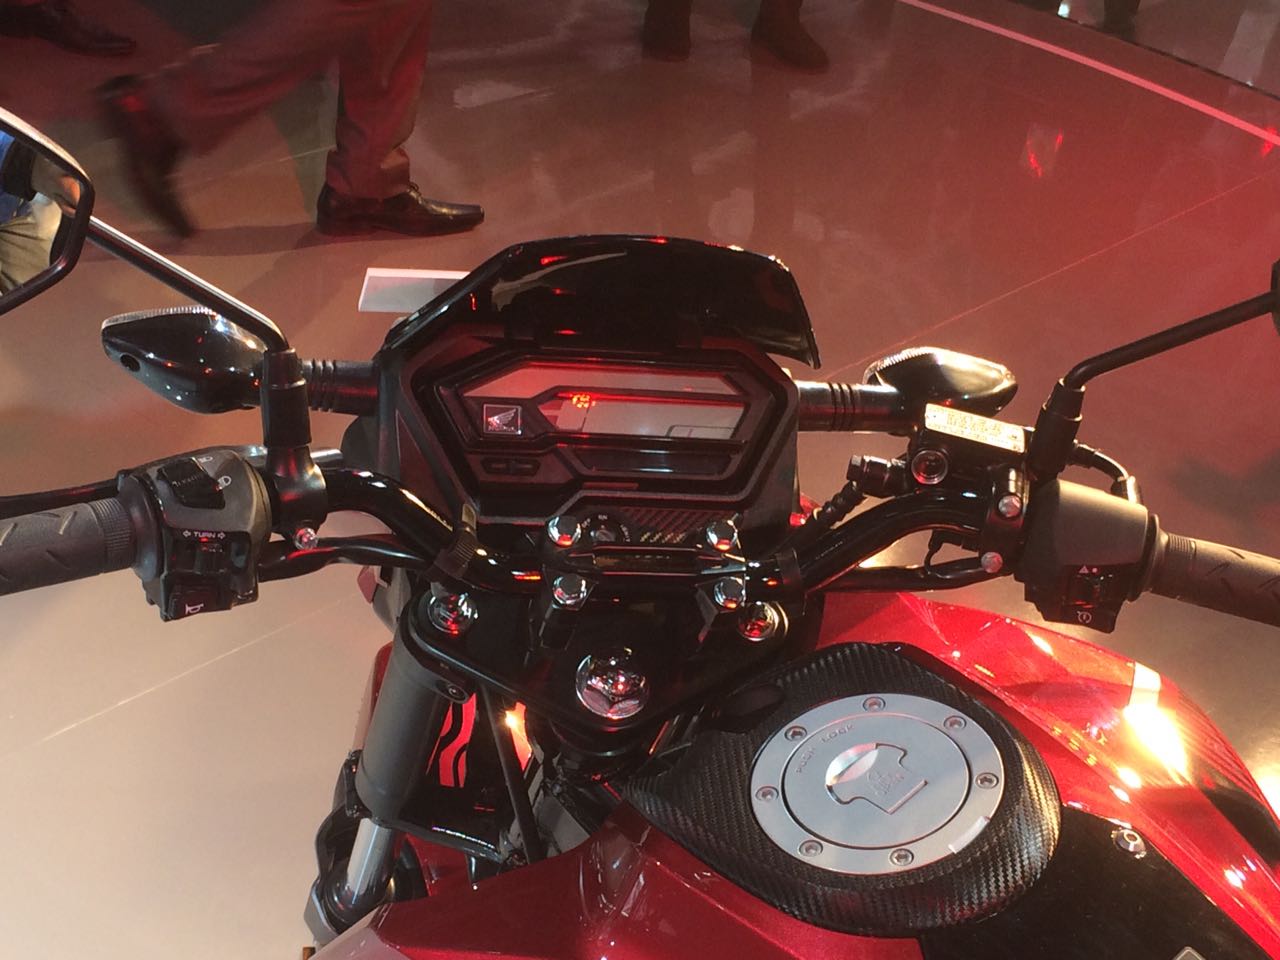  Honda  X  Blade  160cc Motorcycle Debuts at Auto Expo 2019